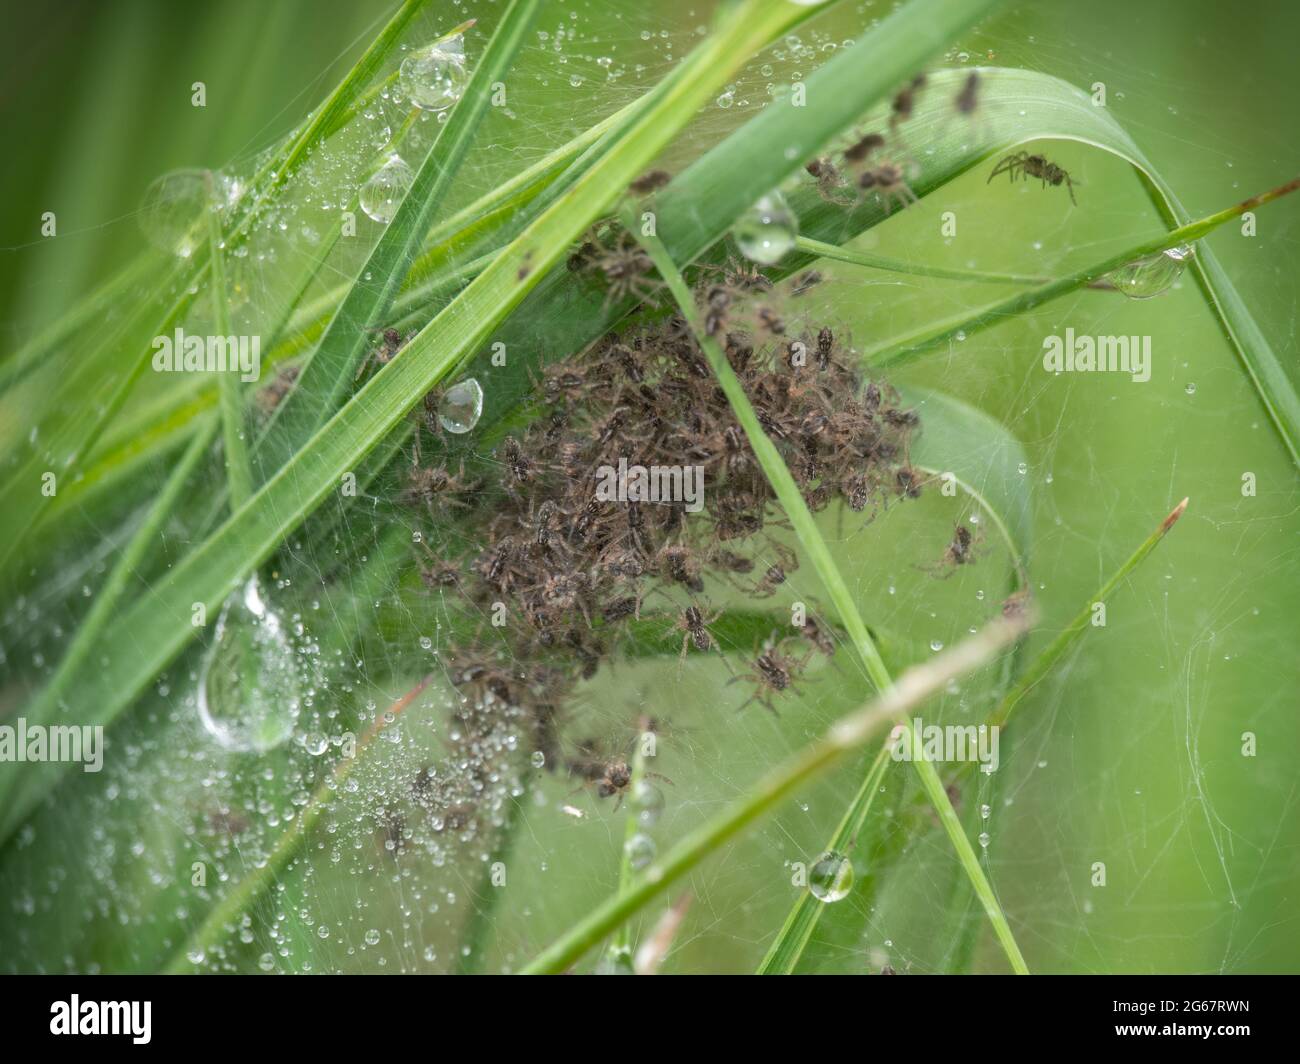 Pisaura mirabilis, nido di ragno per vivai, con spiderlings recentemente covati. Foto Stock